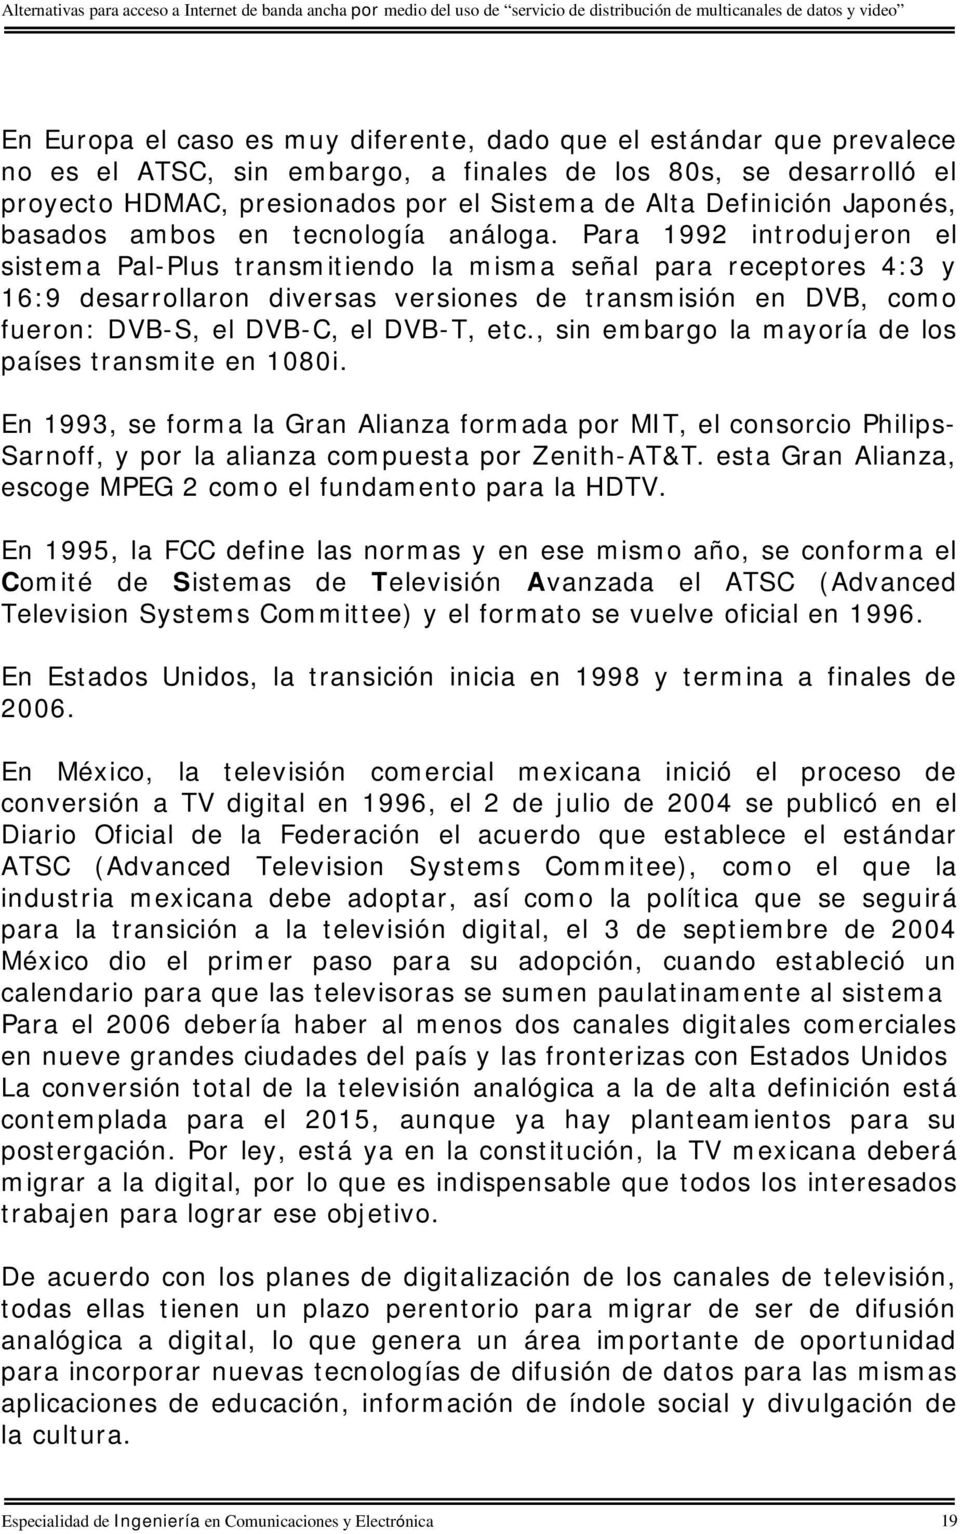 Para 1992 introdujeron el sistema Pal-Plus transmitiendo la misma señal para receptores 4:3 y 16:9 desarrollaron diversas versiones de transmisión en DVB, como fueron: DVB-S, el DVB-C, el DVB-T, etc.